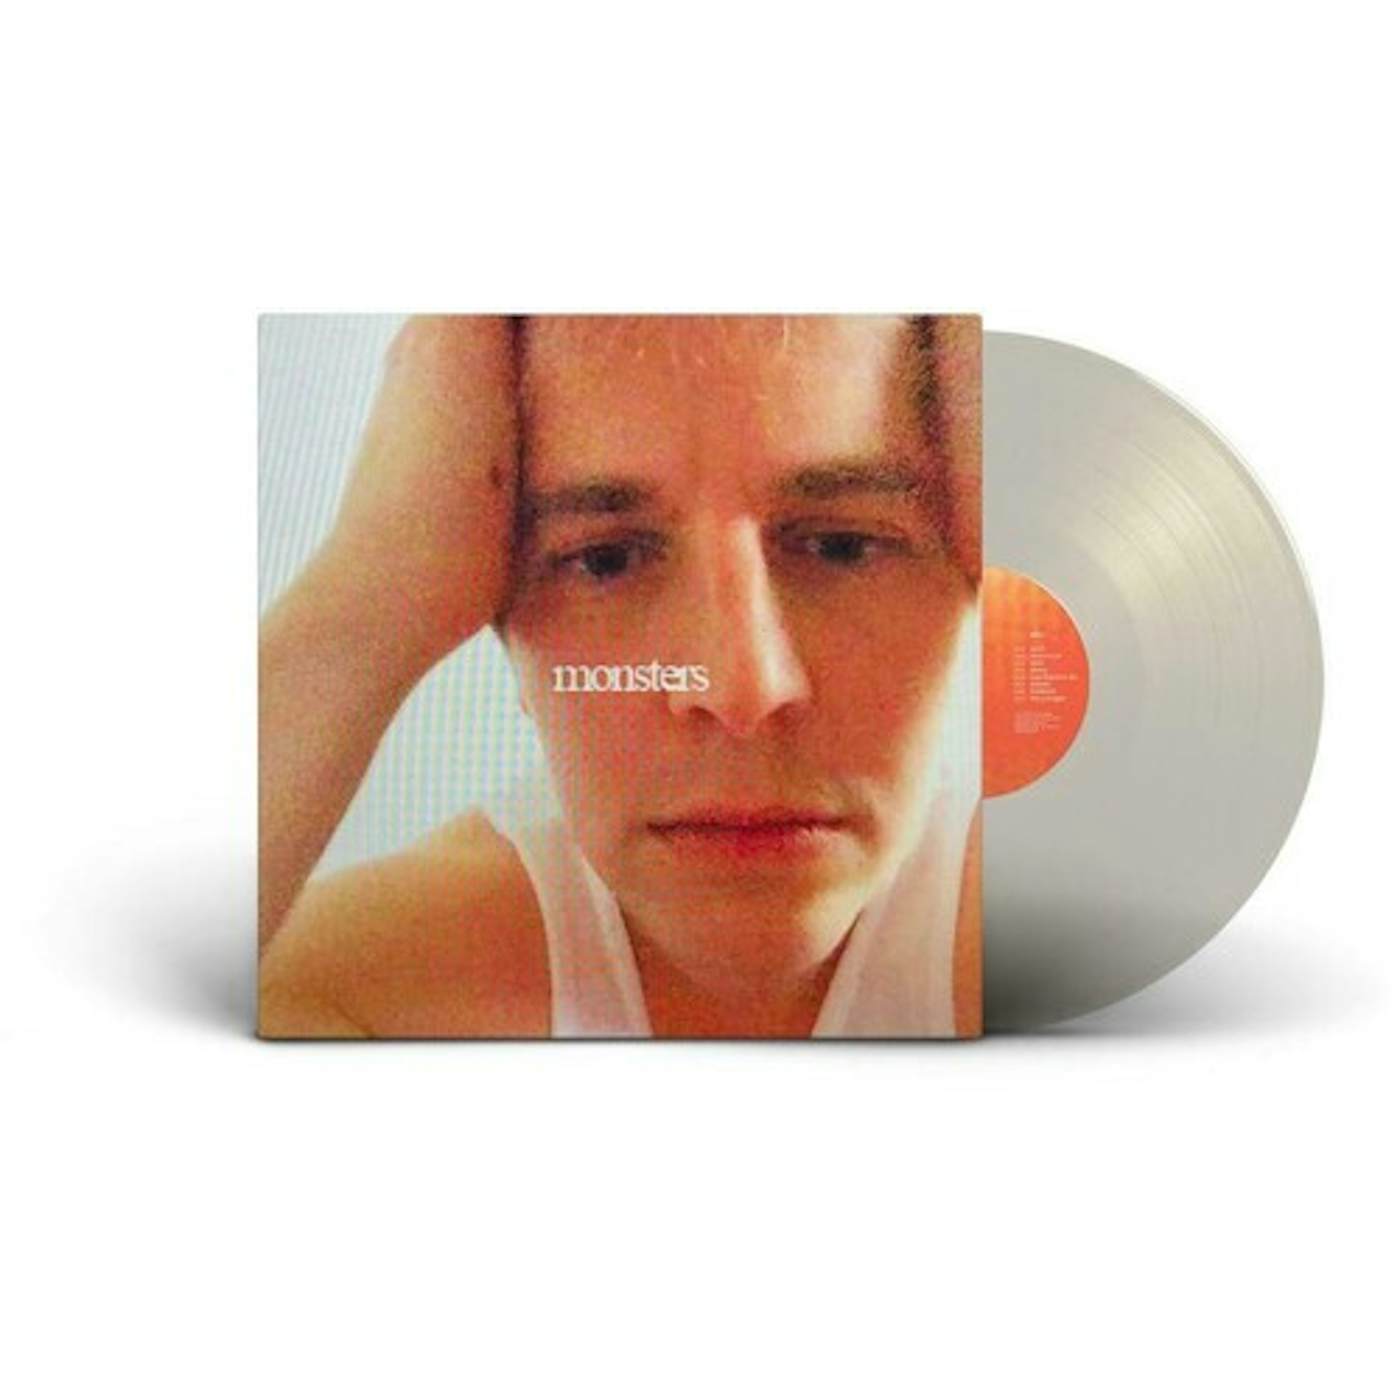 Tom Odell monsters Vinyl Record